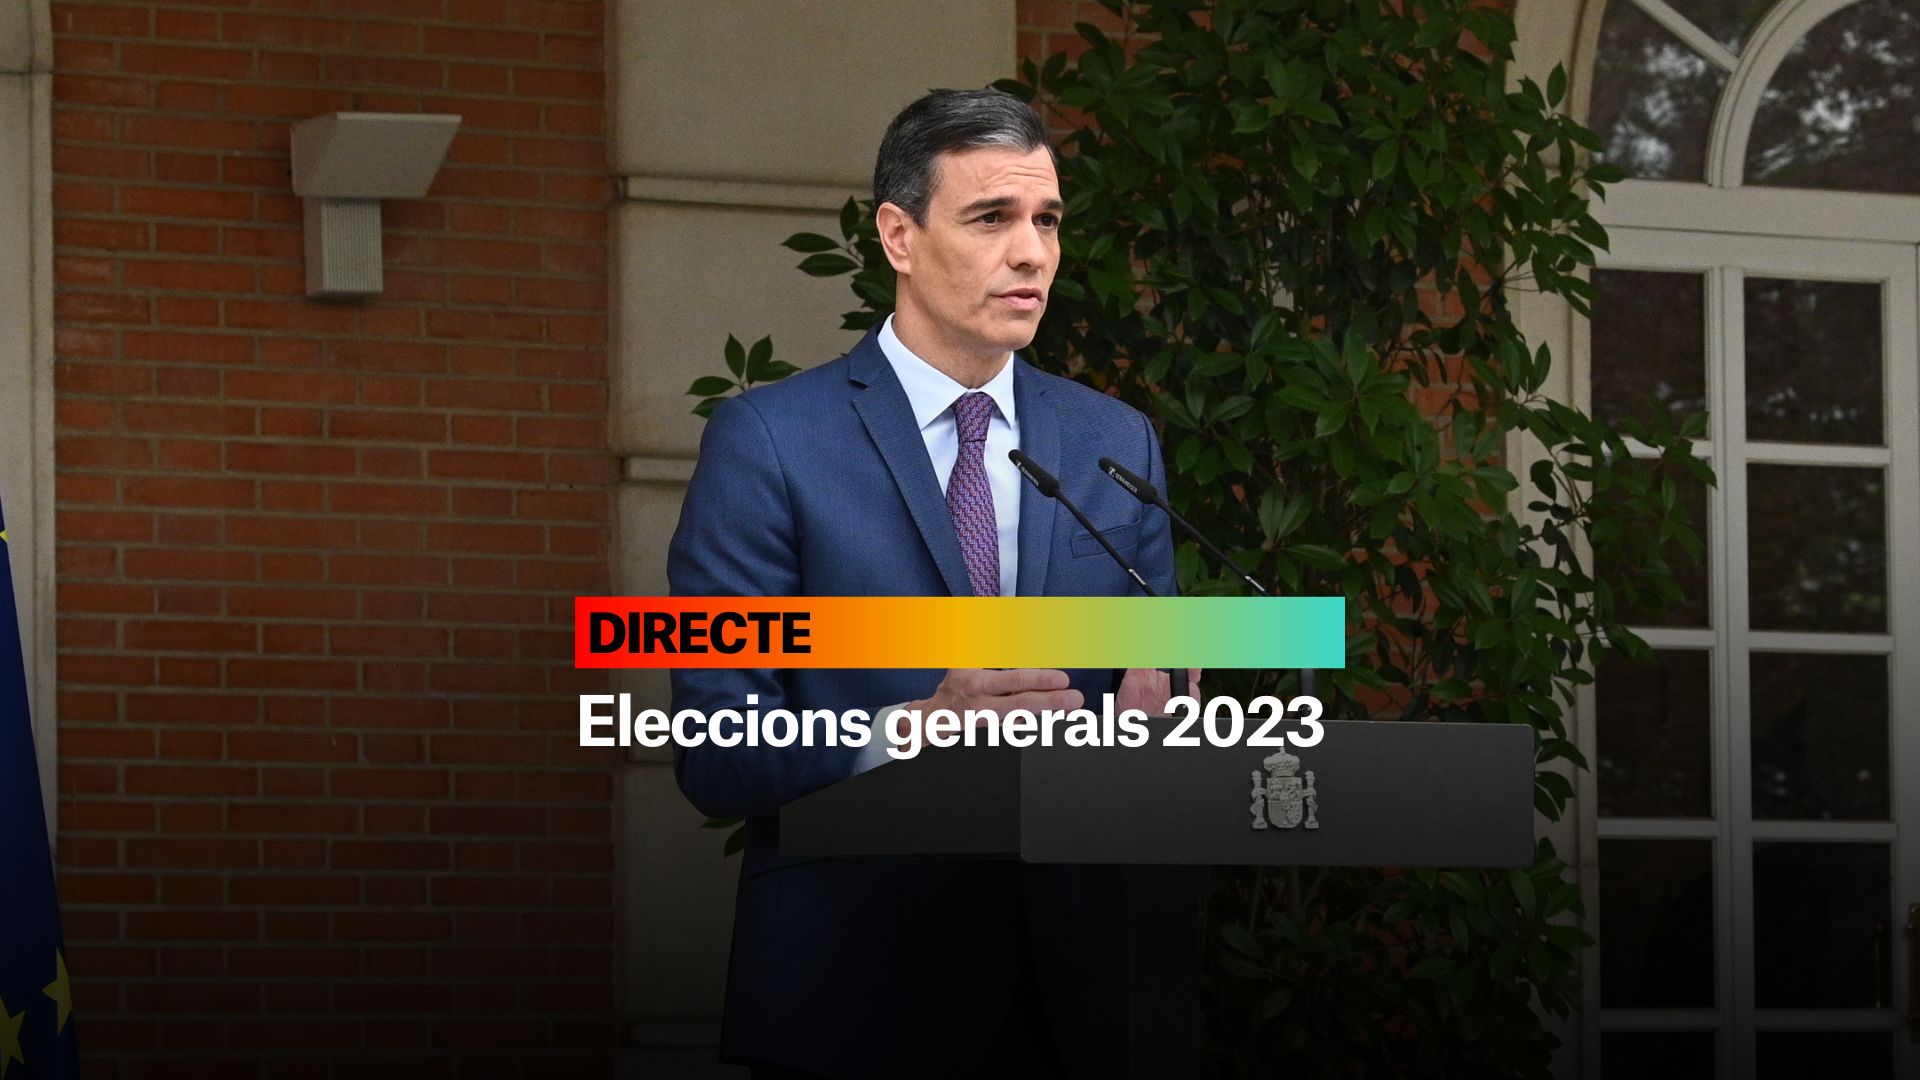 Elecciones generales 2023 en España, DIRECTO | Voto por correo, candidatos y última hora